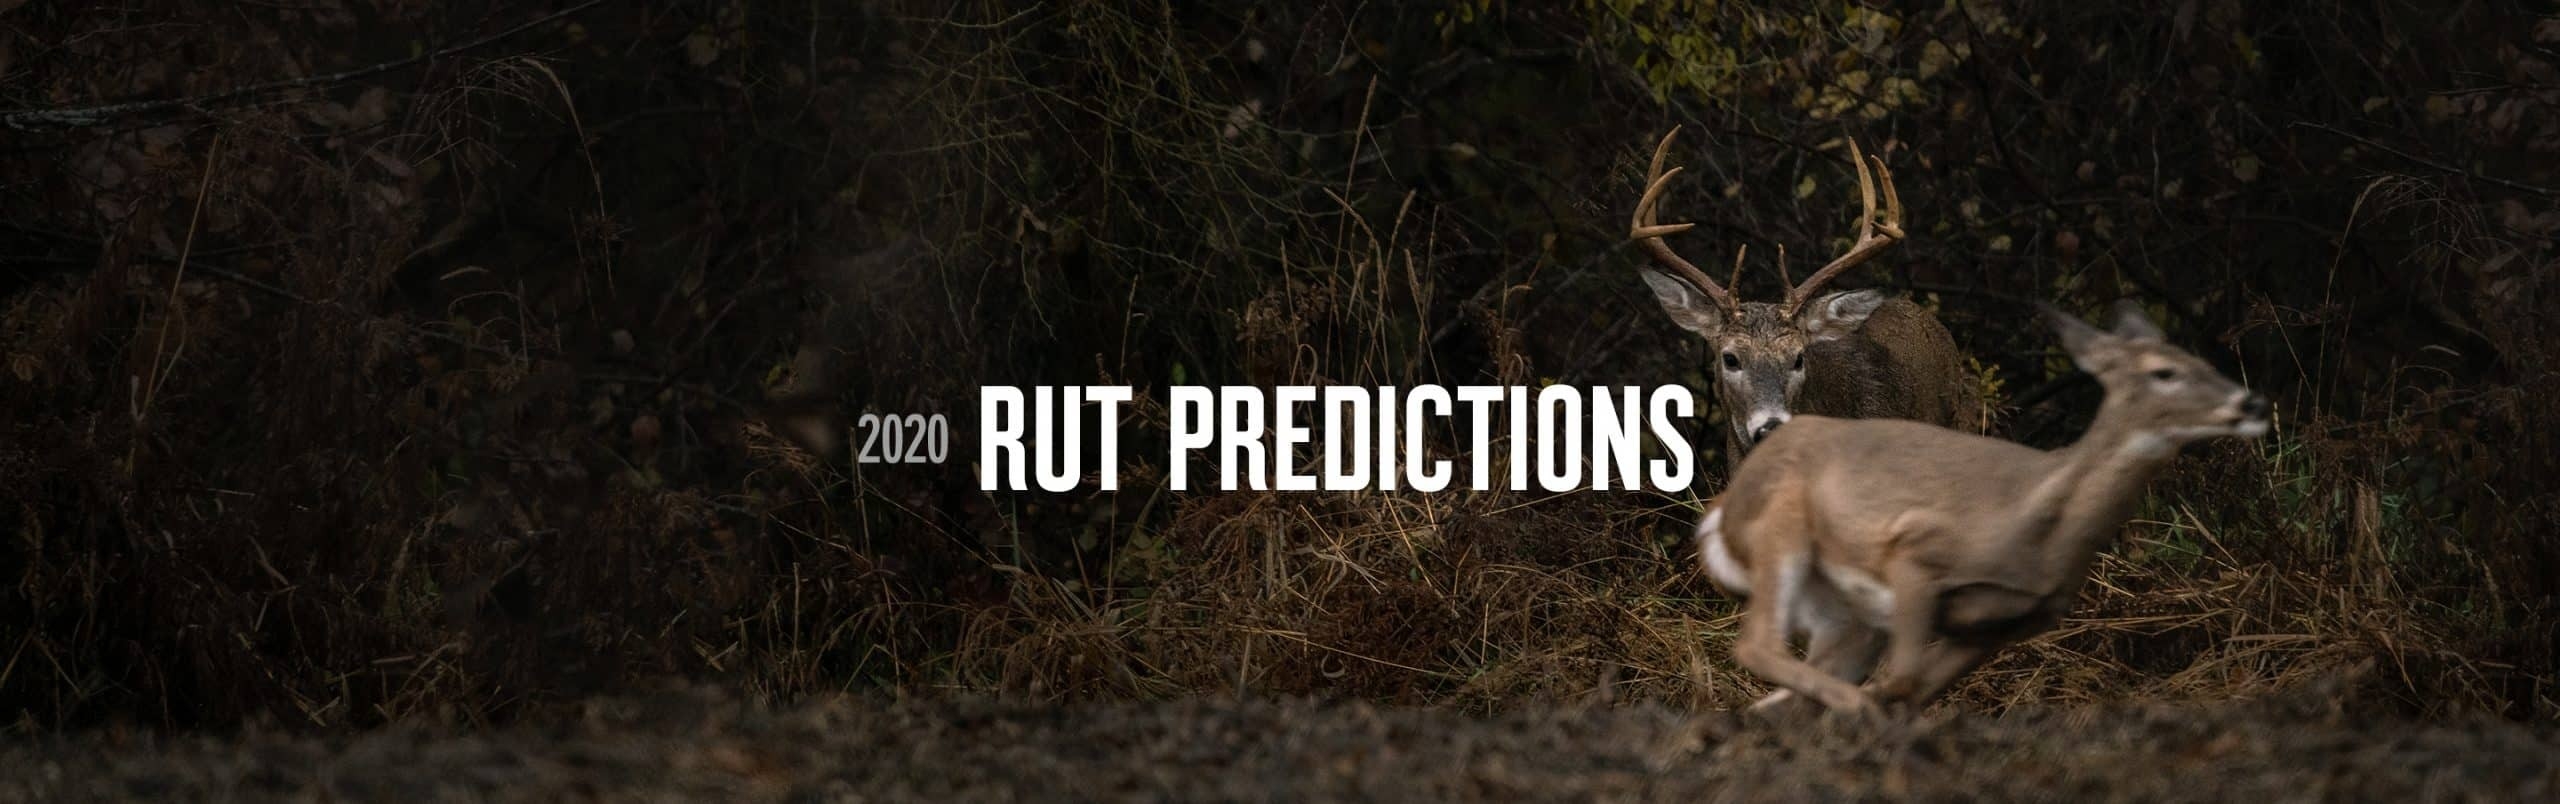 2020 Rut Predictions | Onx Maps-2021 Va Rut Predictions